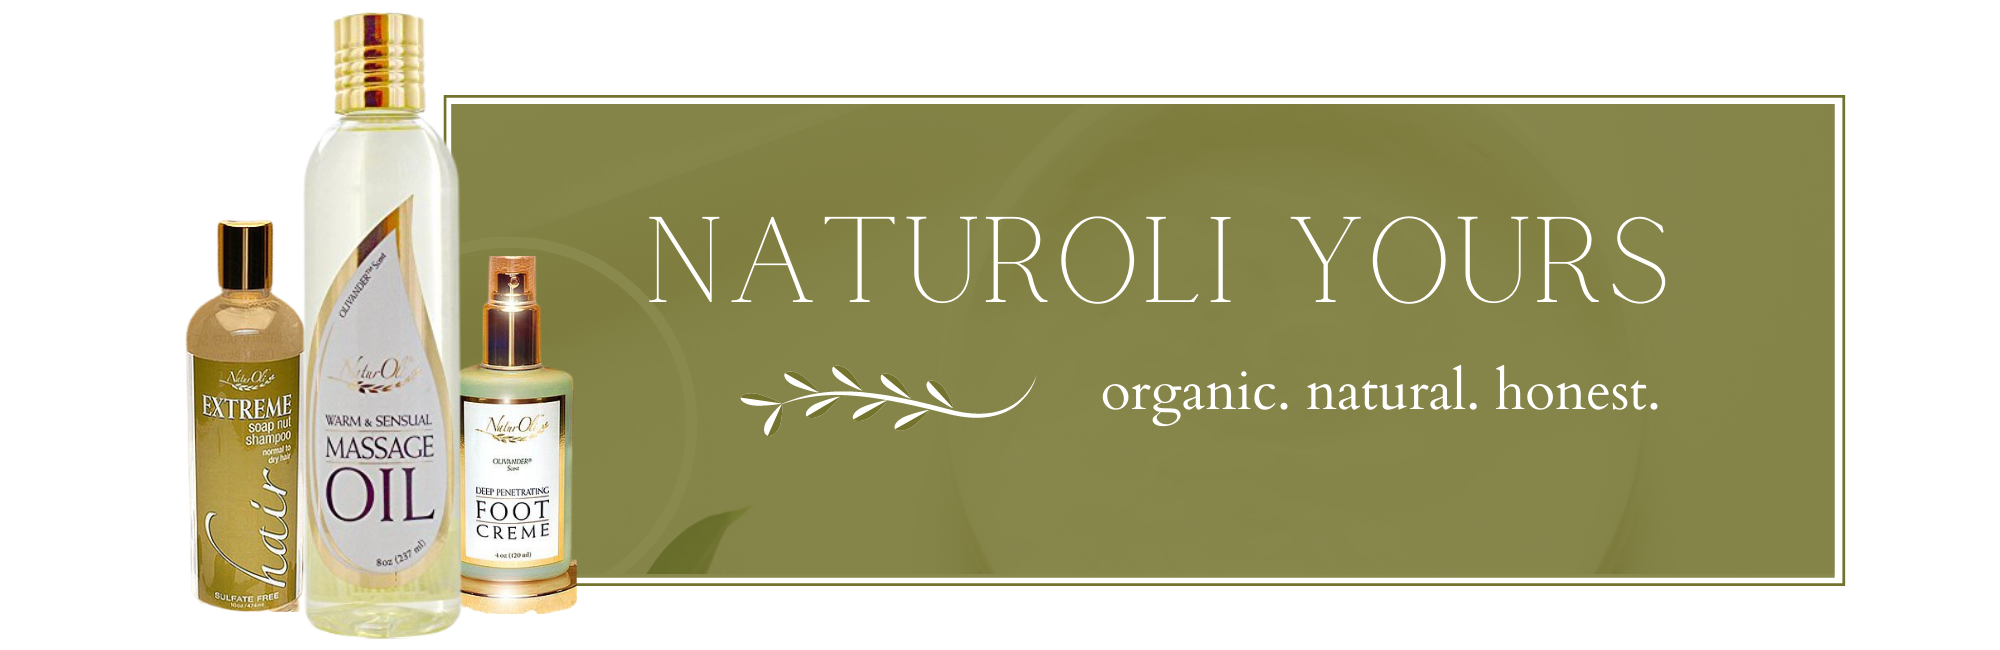 photo collage of NaturOli Beautiful, LLC products